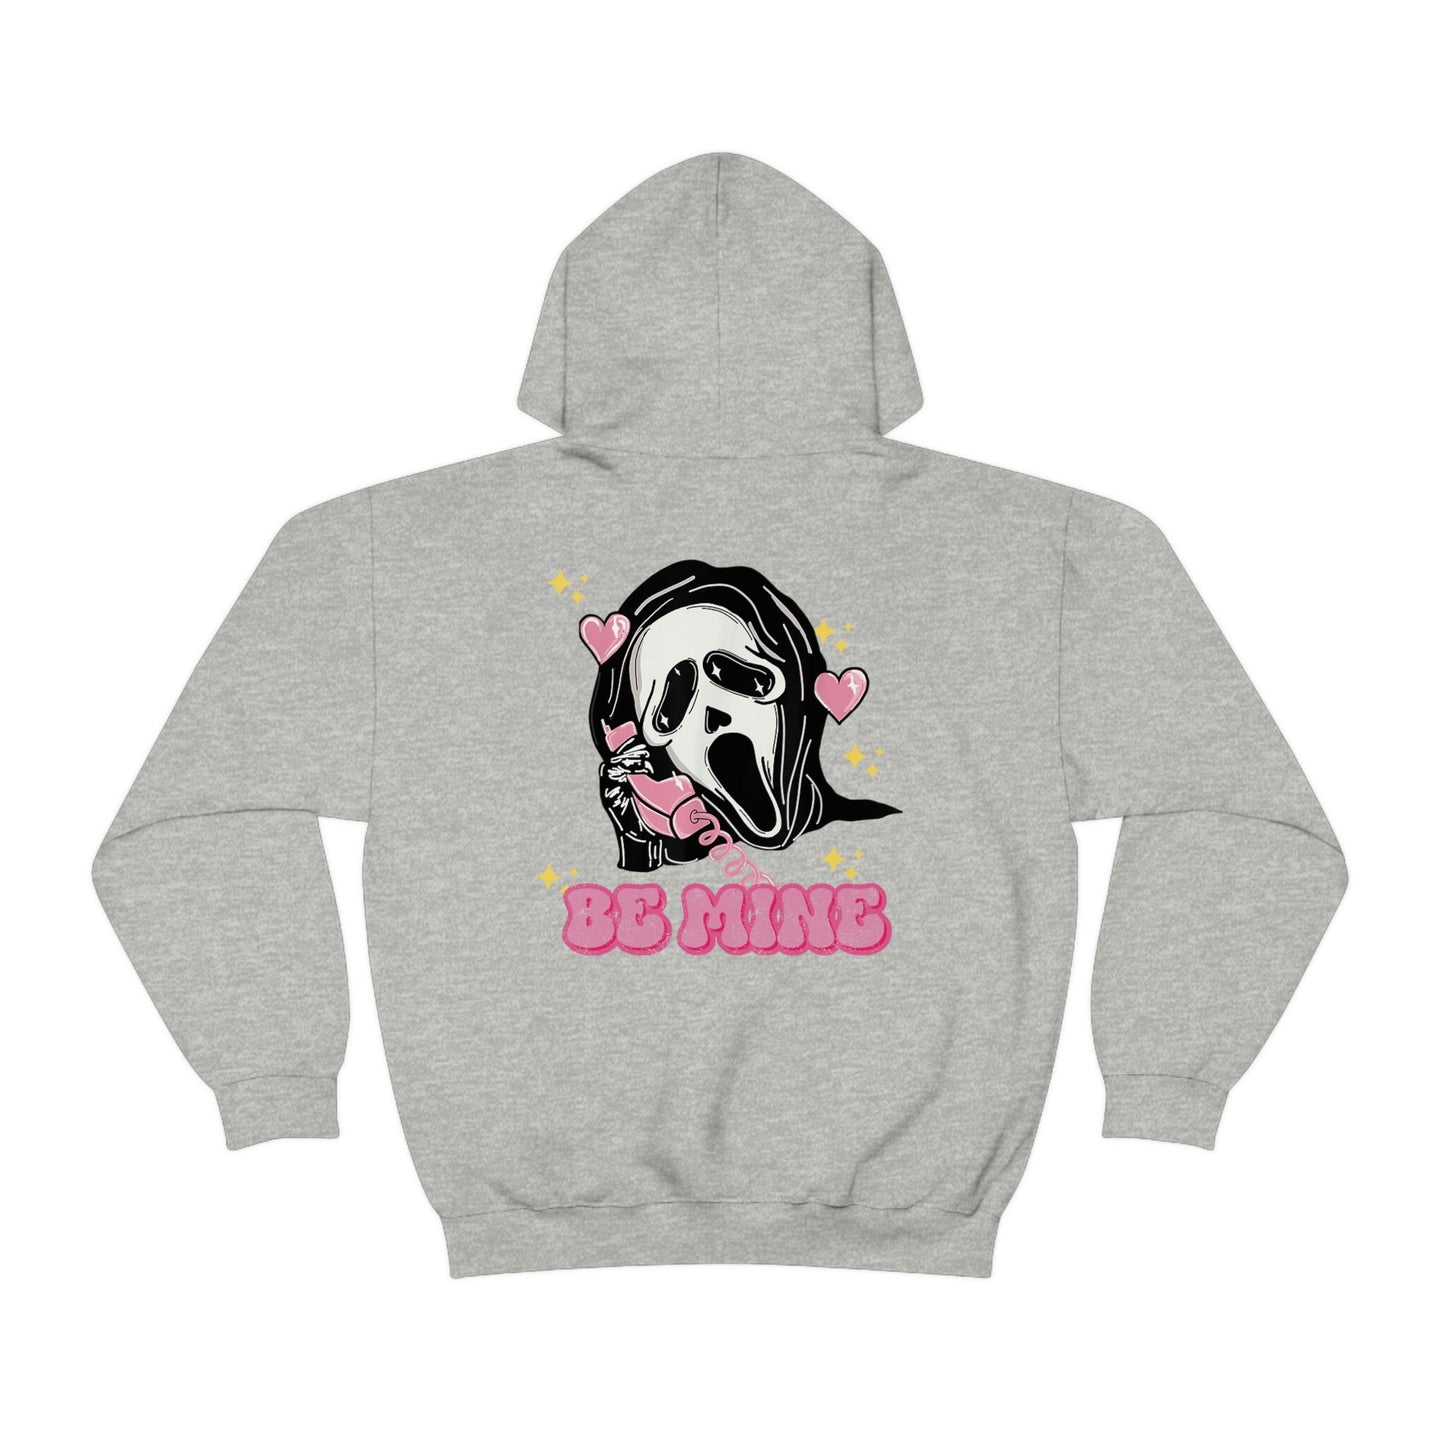 Scream hoodie, Ghostface sweatshirt, Spooky Day, Horror hoodie, Horror aesthetic, Horror apparel, Scream apparel, Goth hoodie